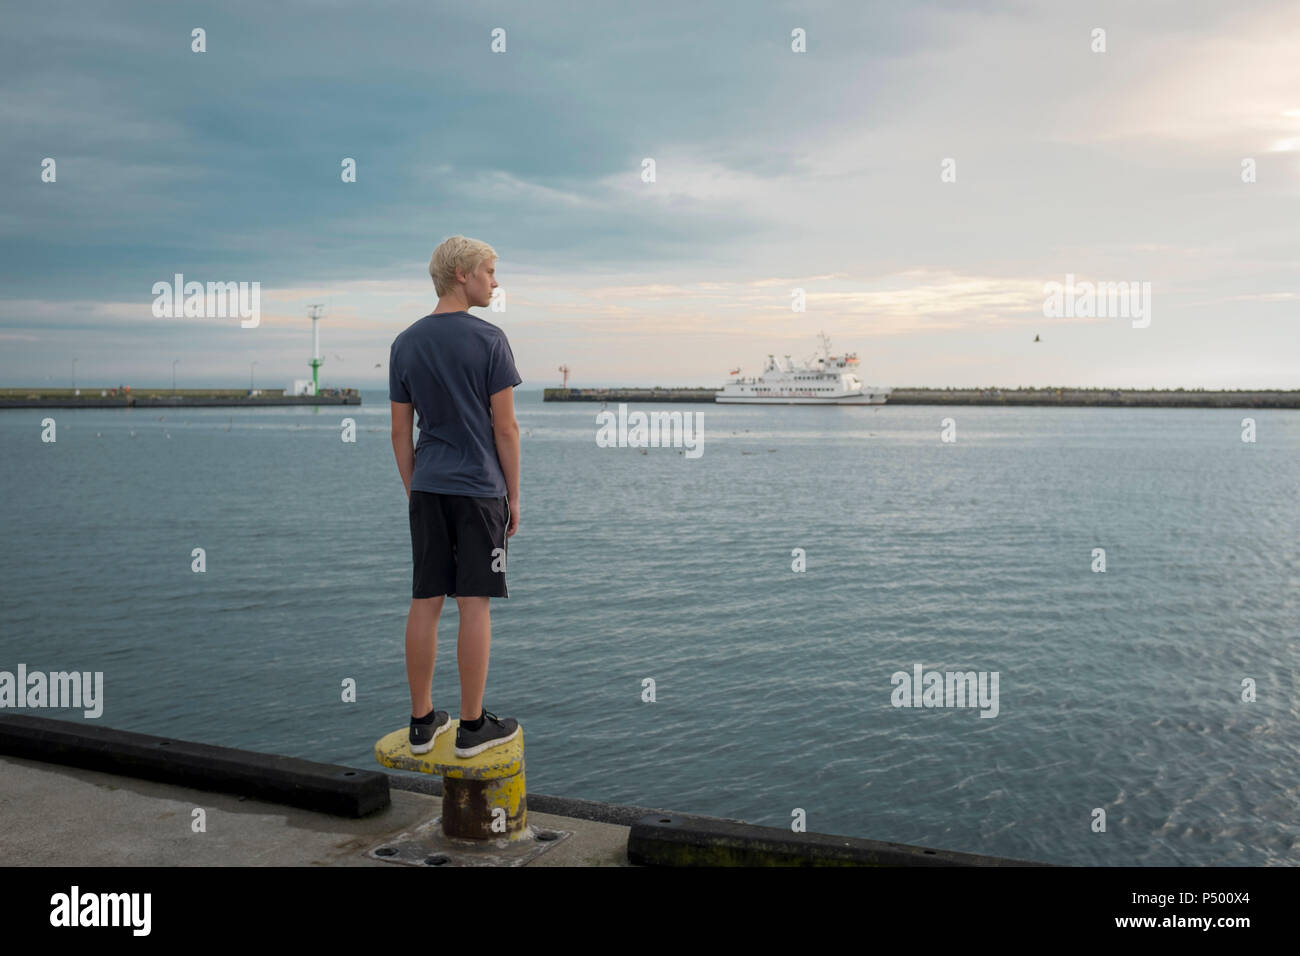 Polonia, la Bahía de Gdansk, adolescente de pie sobre el malecгіn mirando a distancia Foto de stock